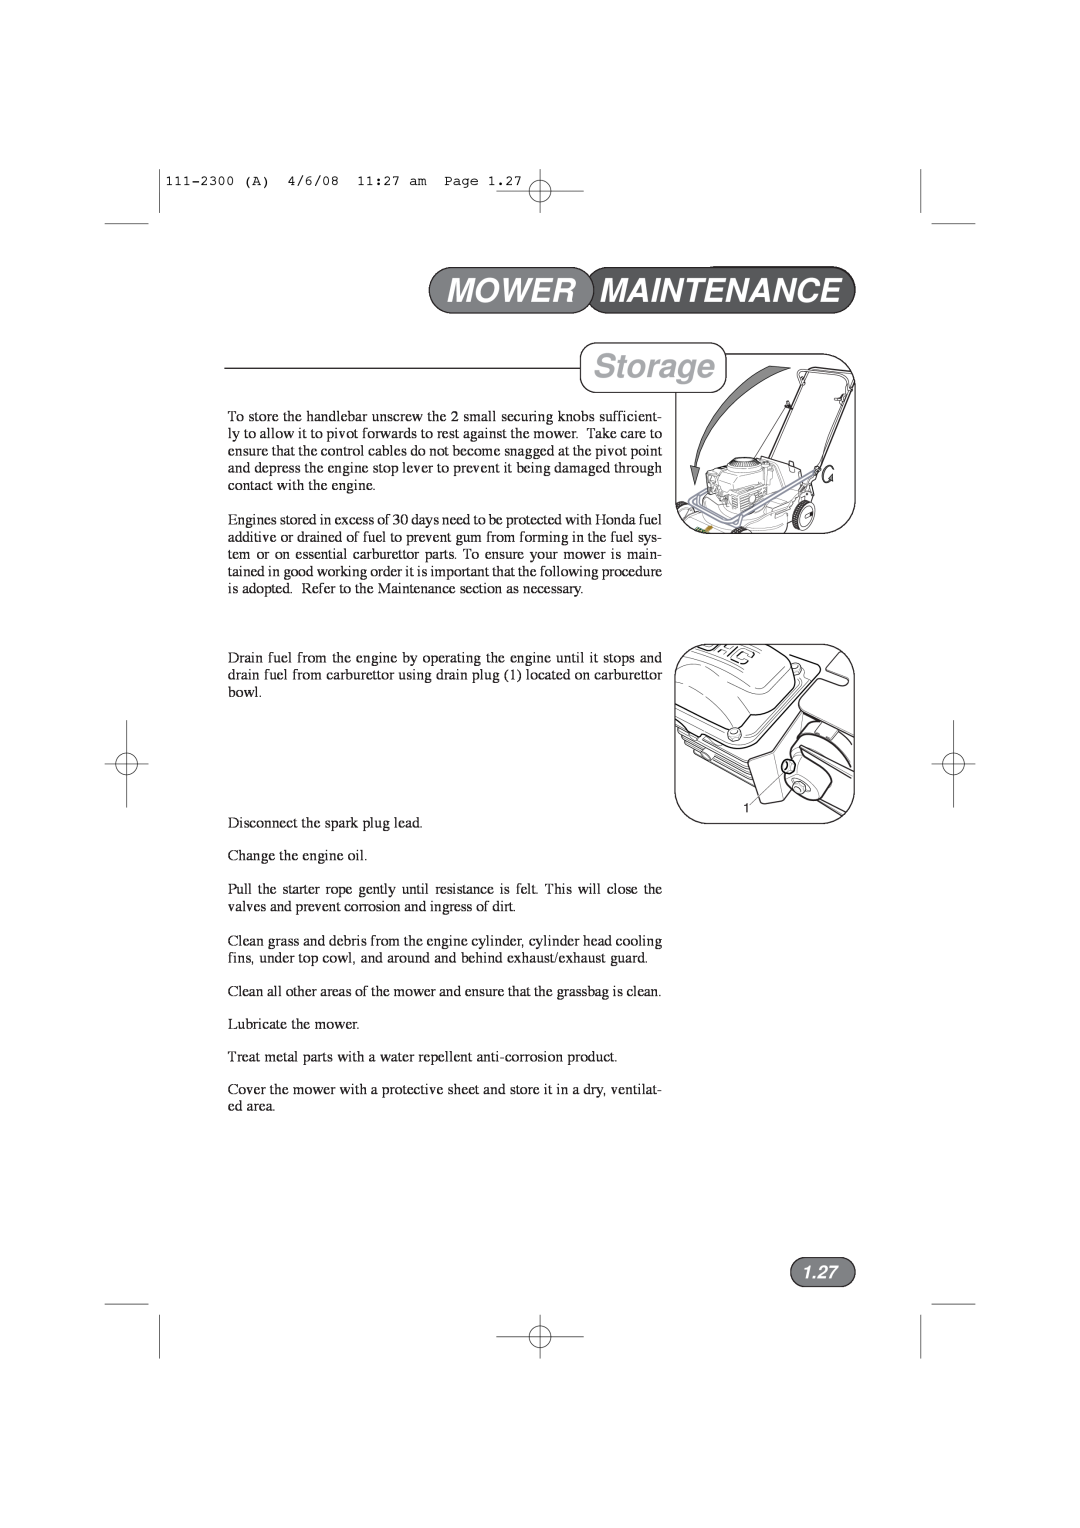 Hayter Mowers 43F manual Storage, 1.27, Mower Maintenance 